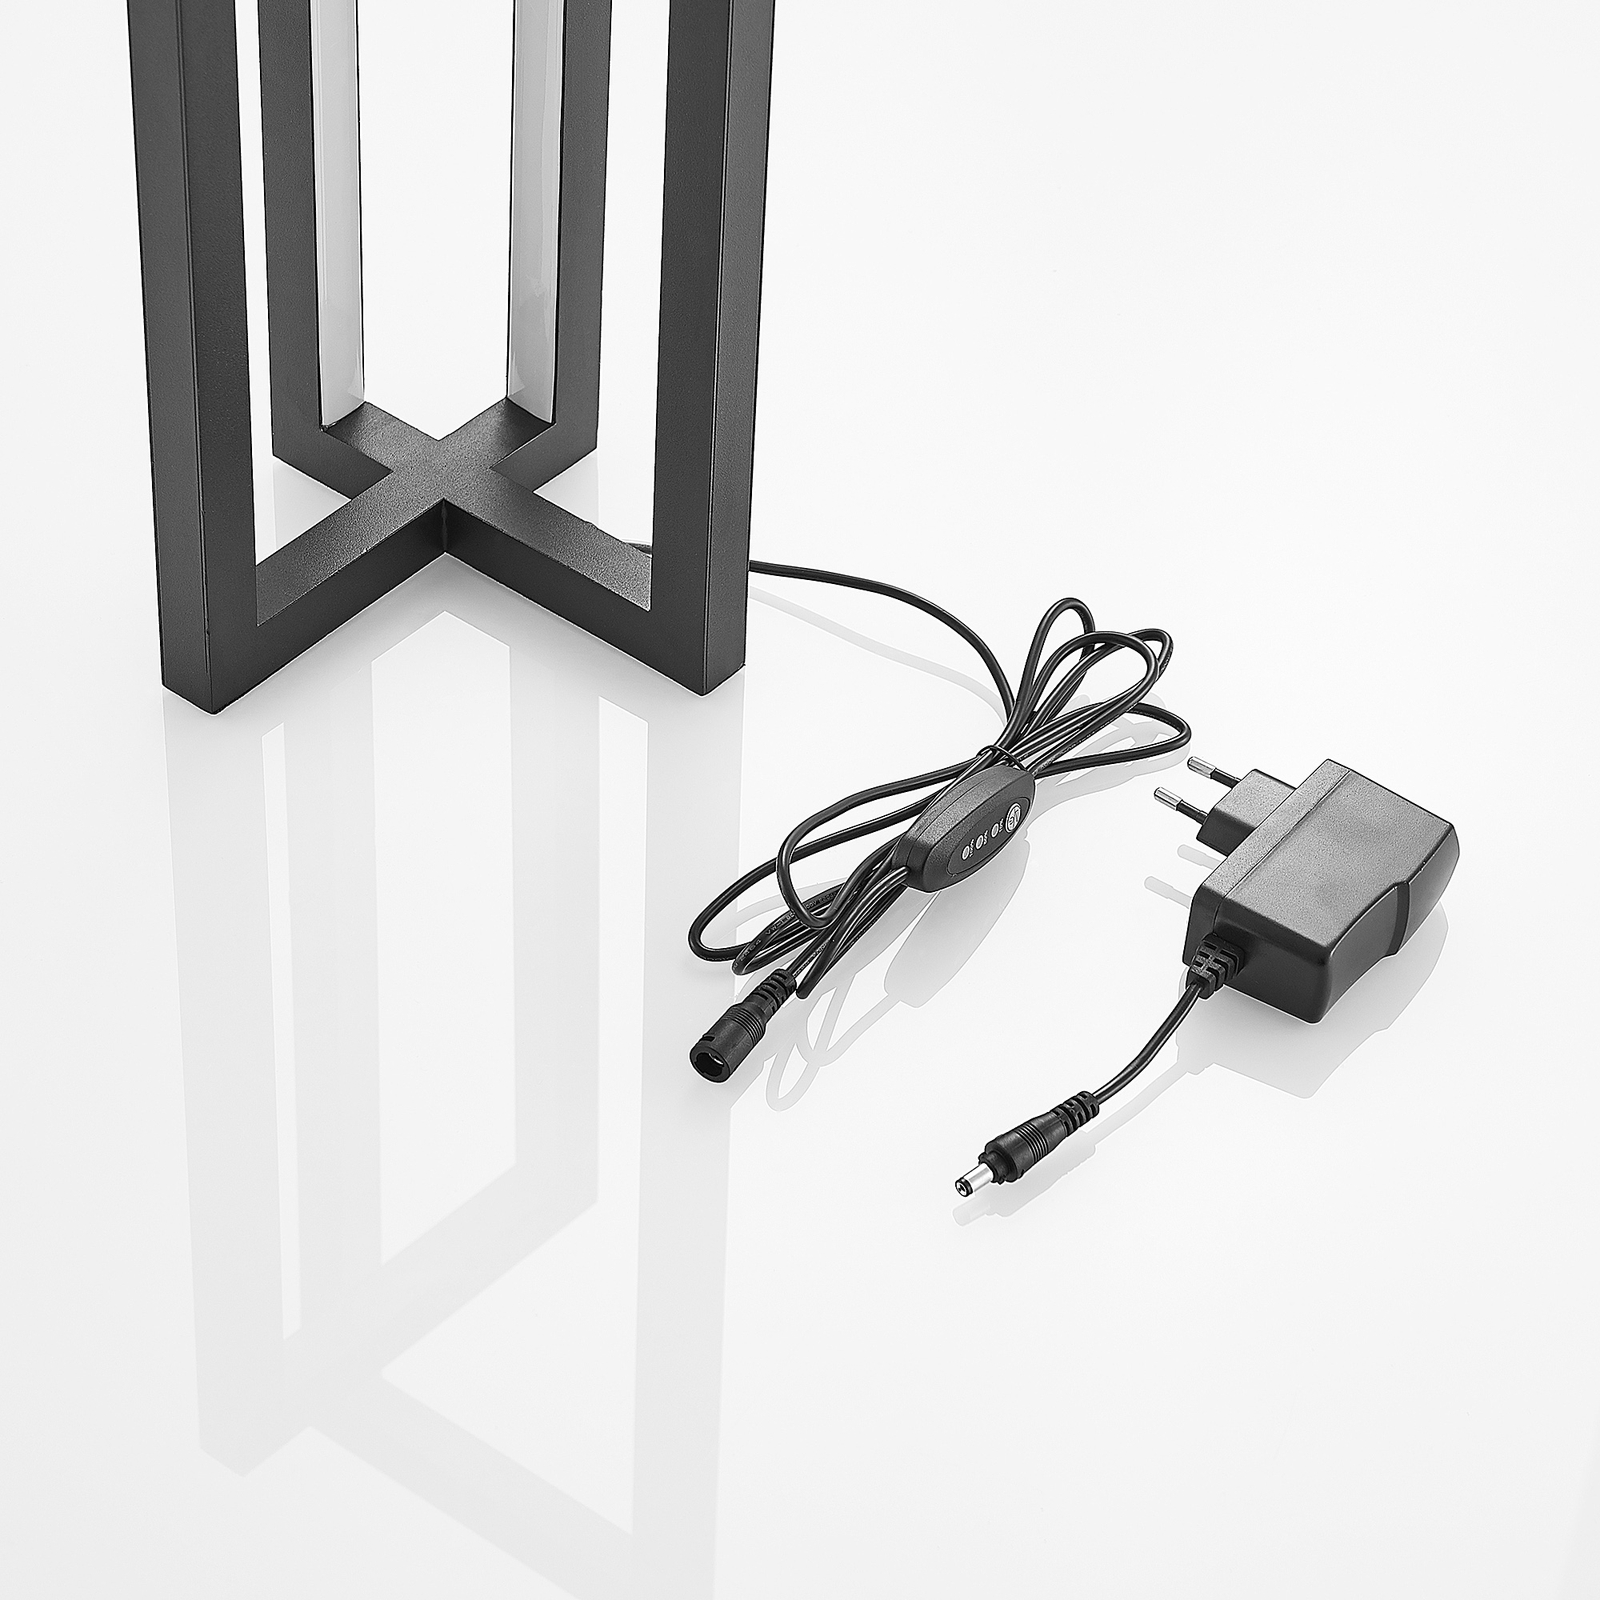 Lucande Hylda LED stolní lampa v černé barvě